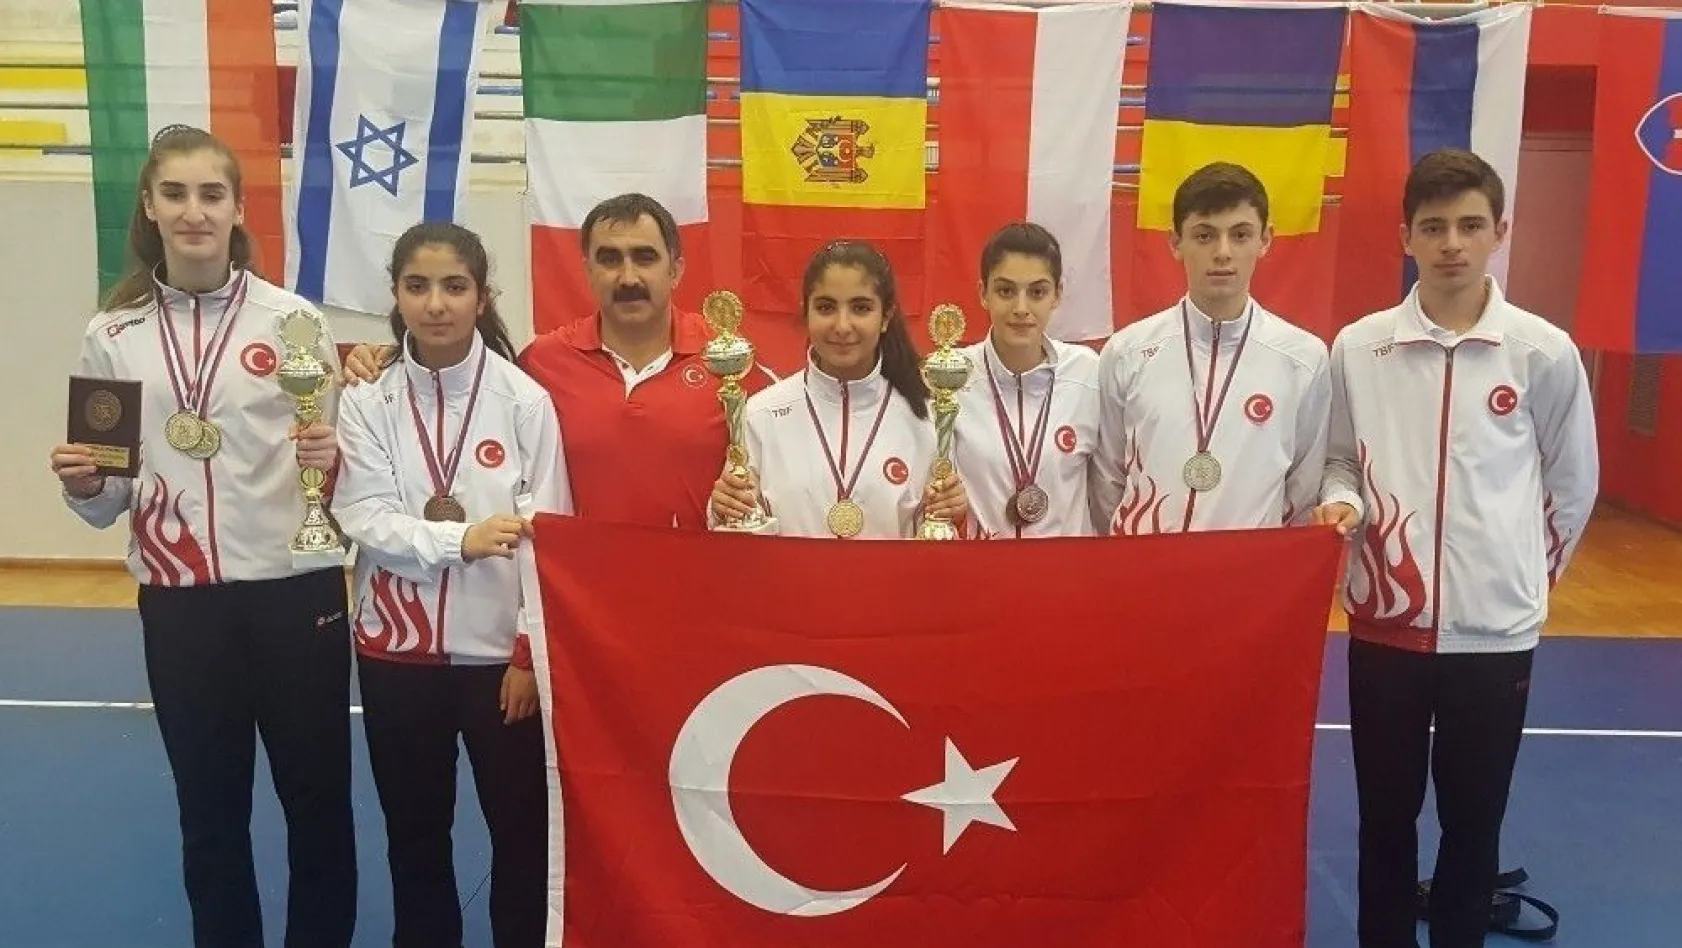 Erzincanlı badmintoncular Sırbistan'dan madalyayla döndü
